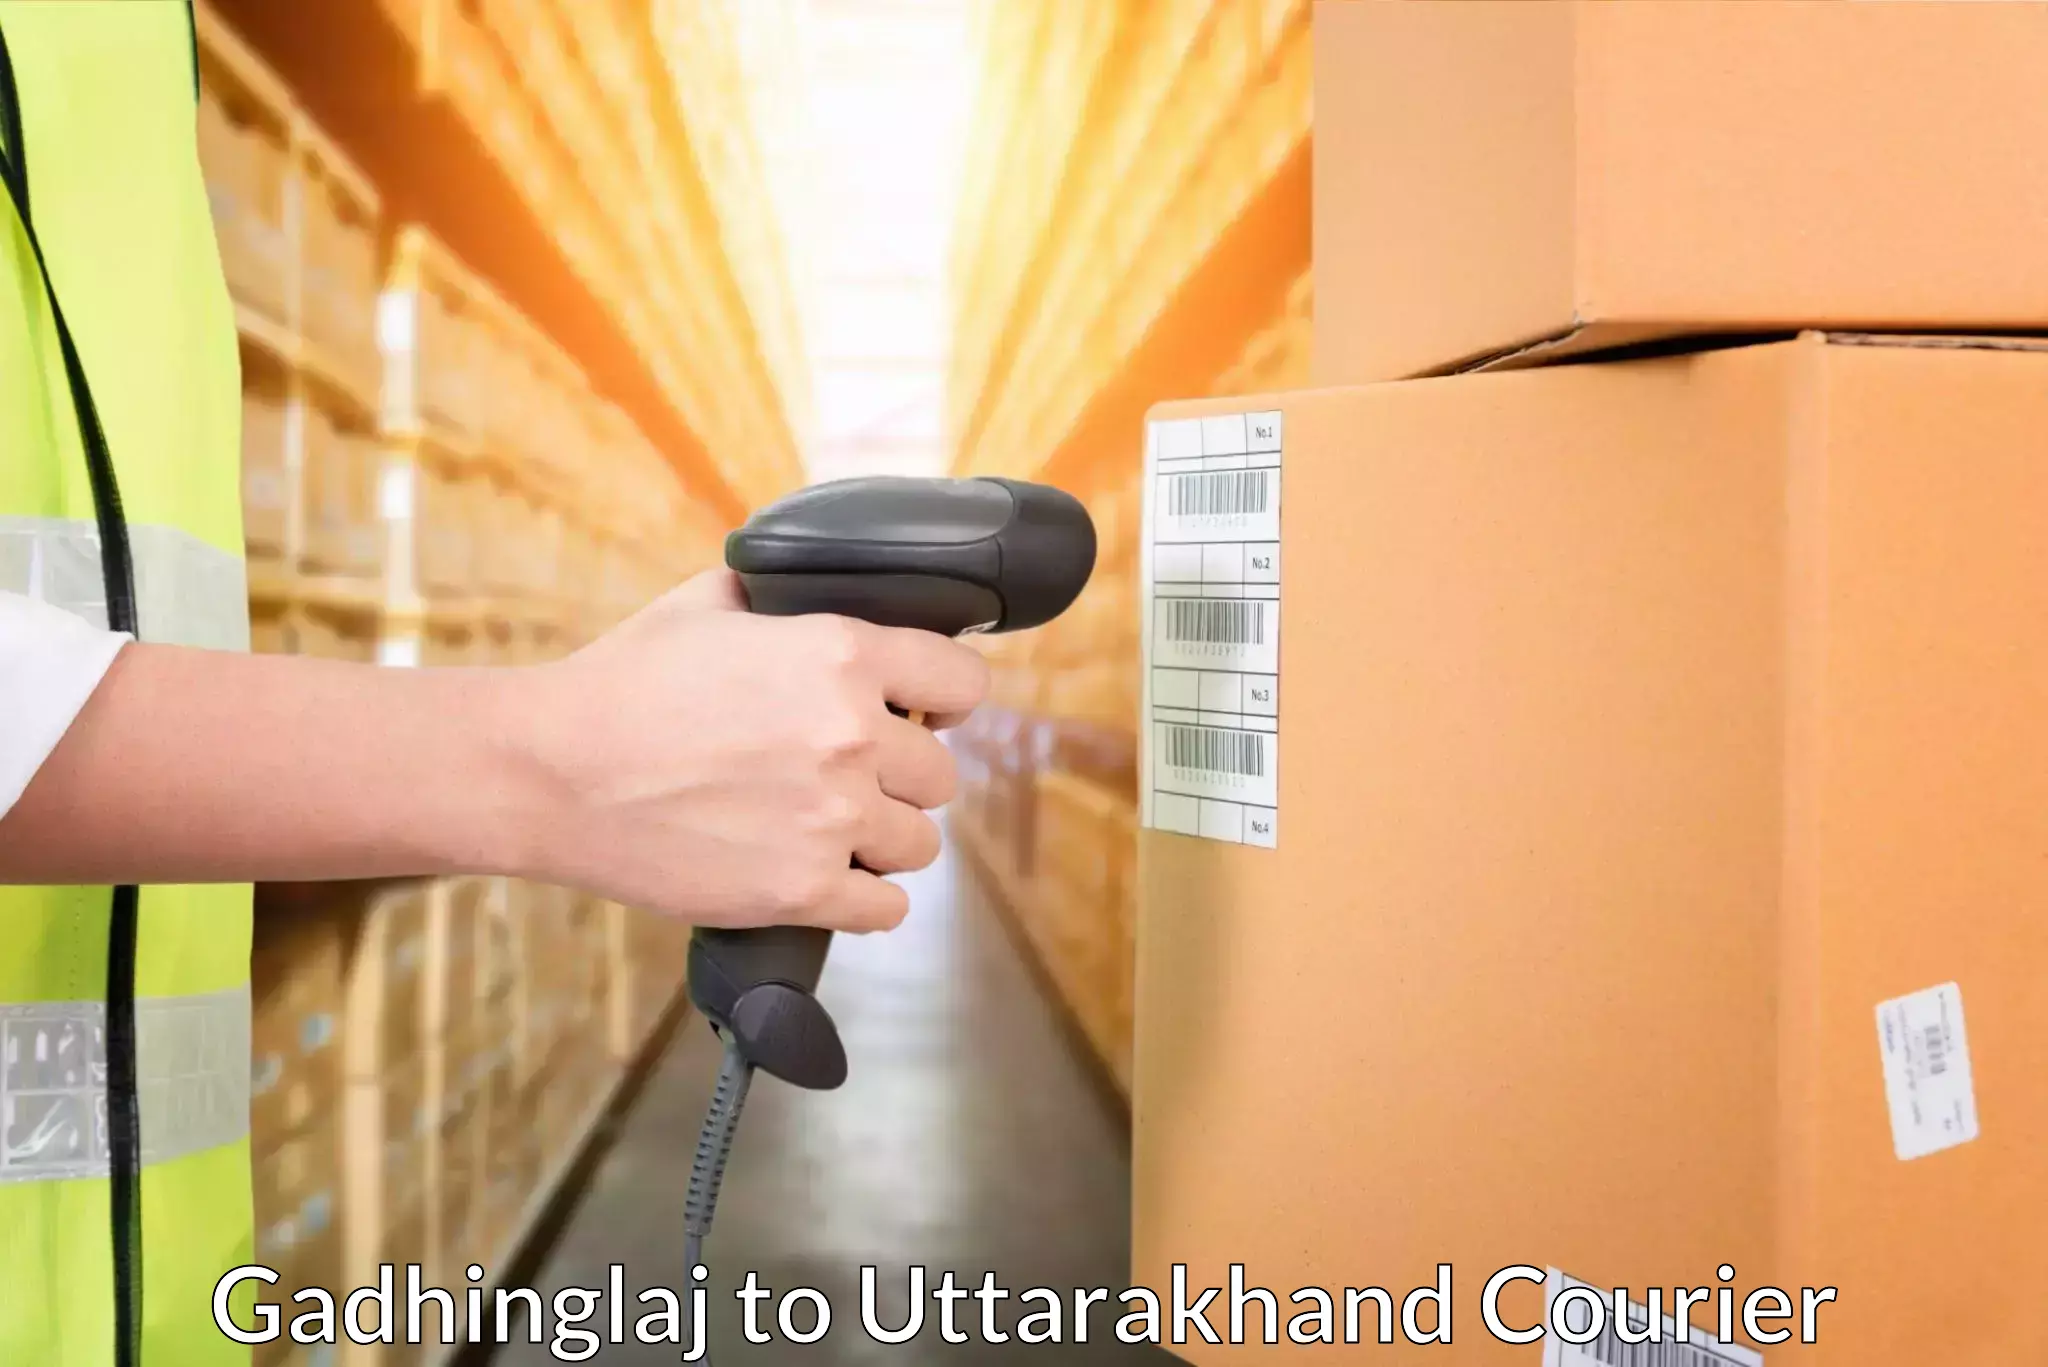 Corporate courier solutions Gadhinglaj to Karnaprayag